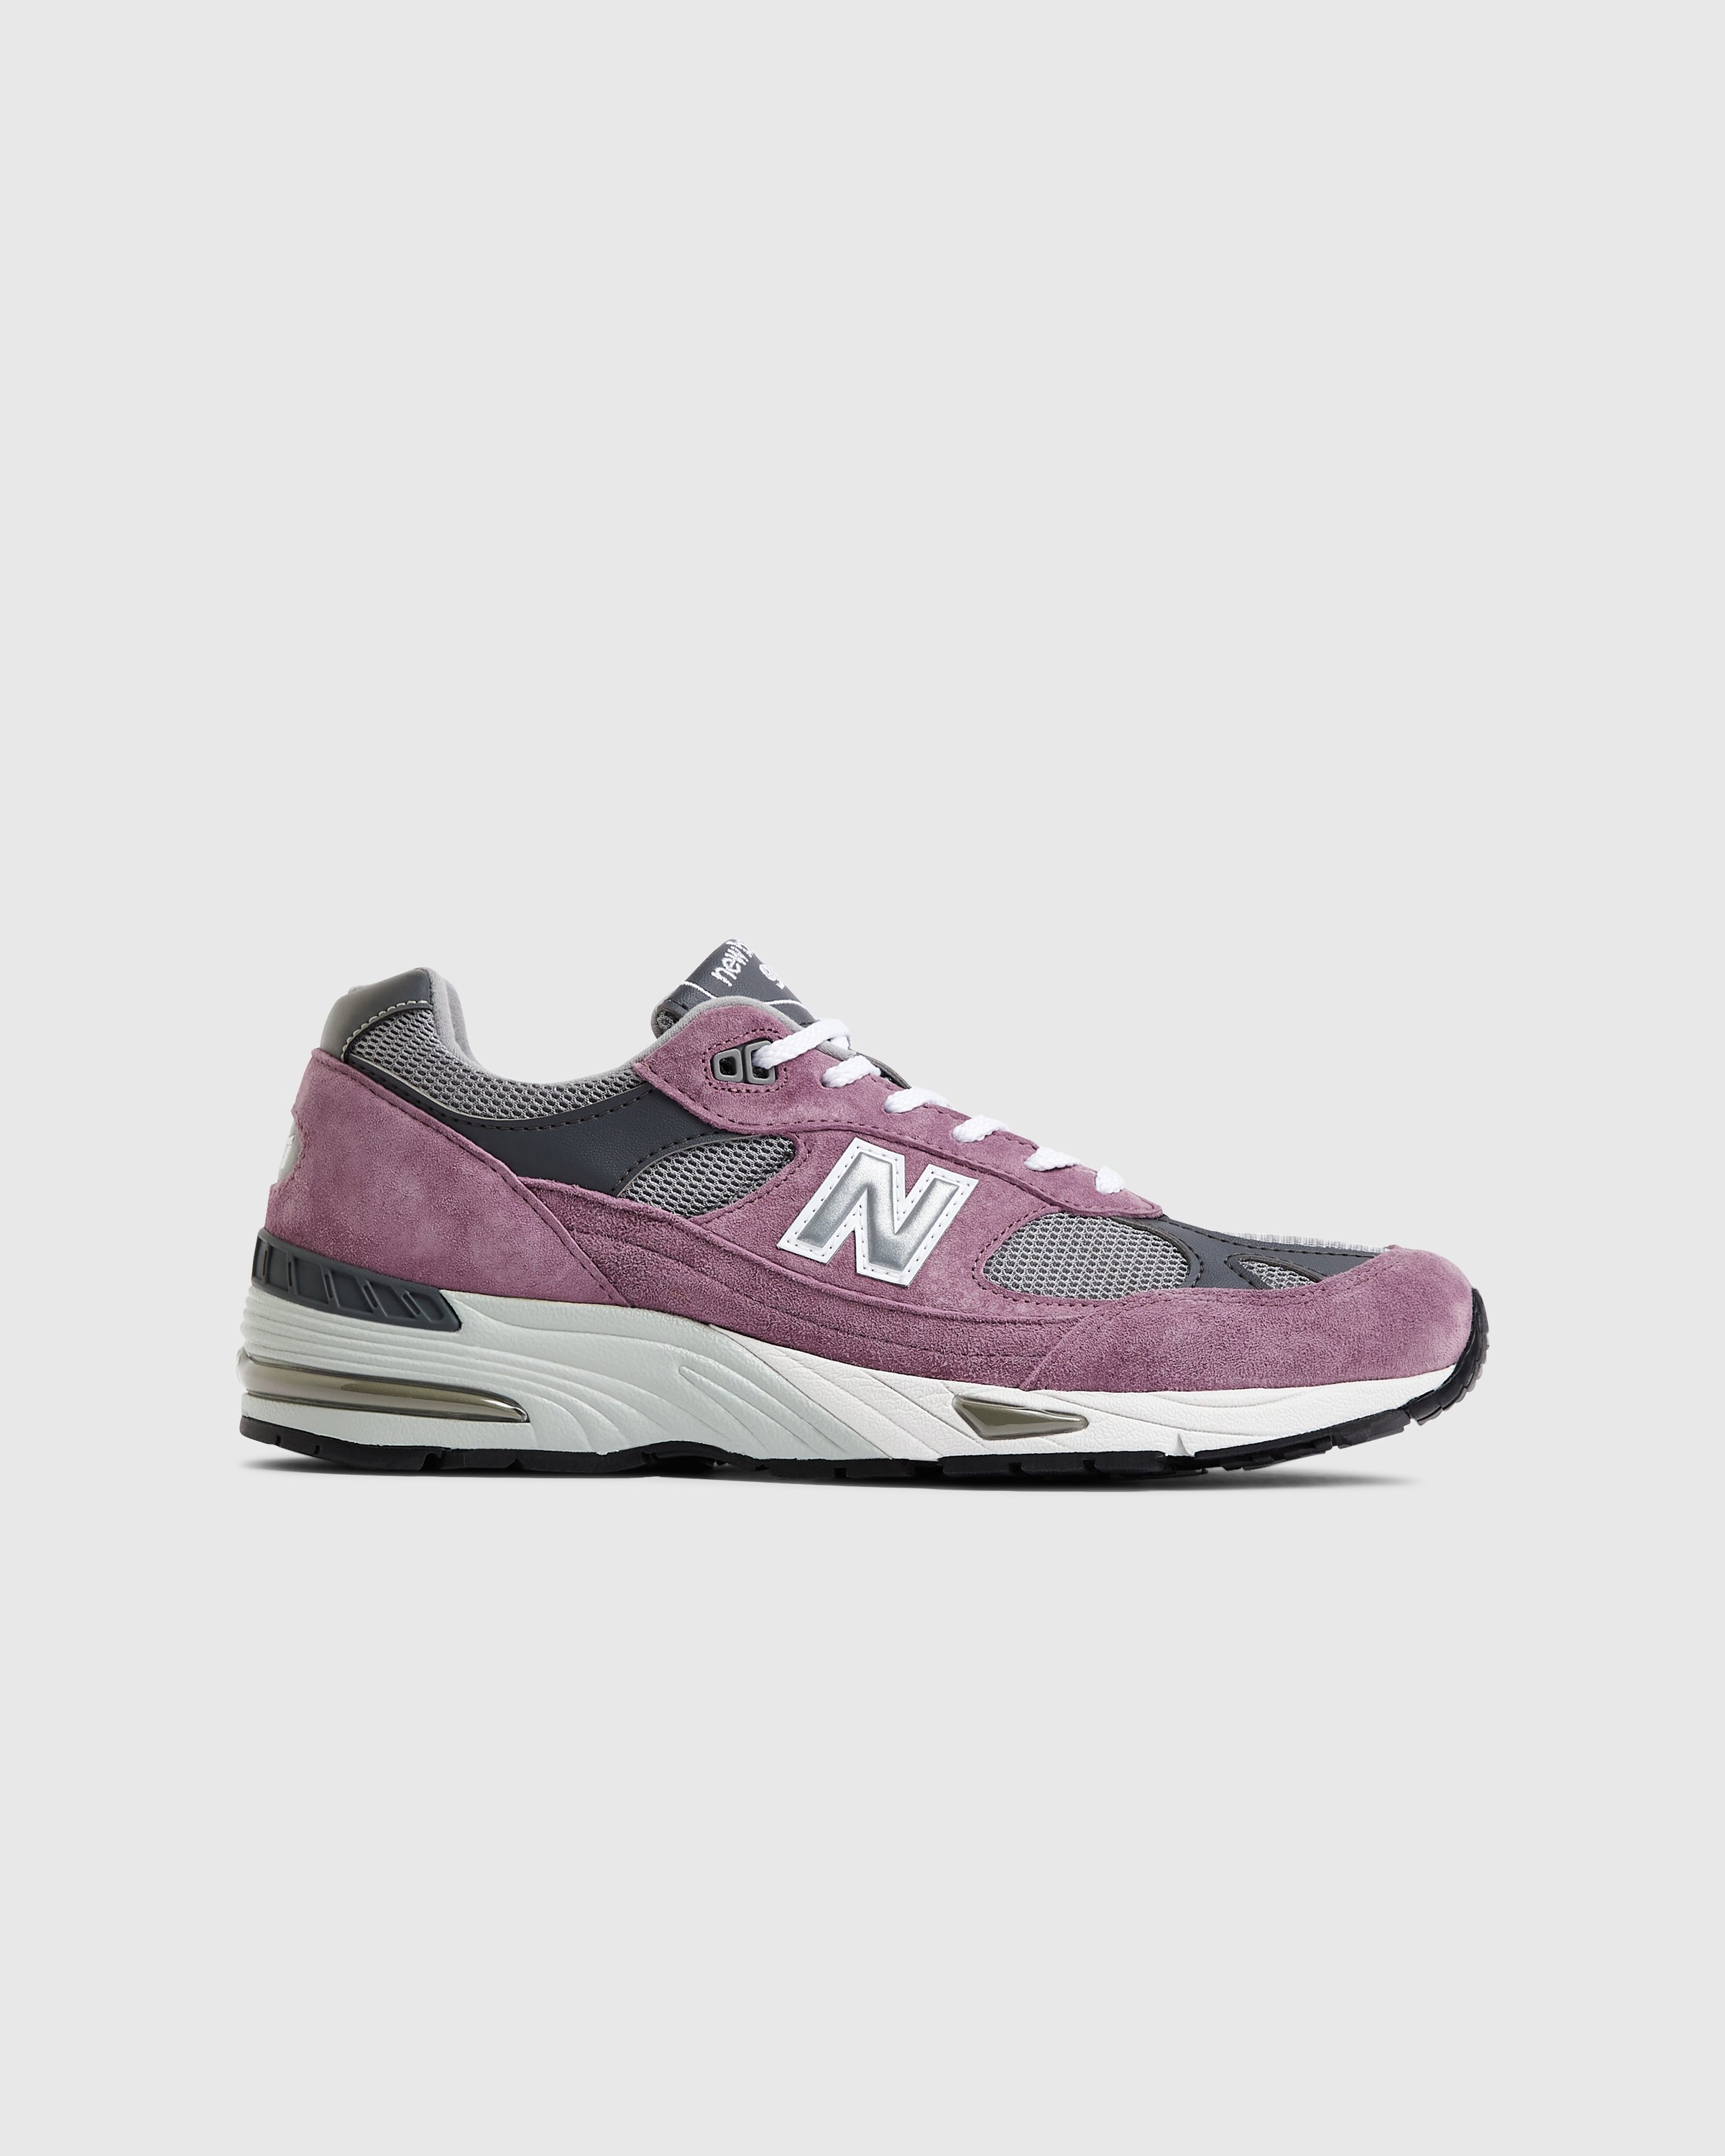 New Balance - M 991 PGG Pink/Grey - Footwear - Pink - Image 1